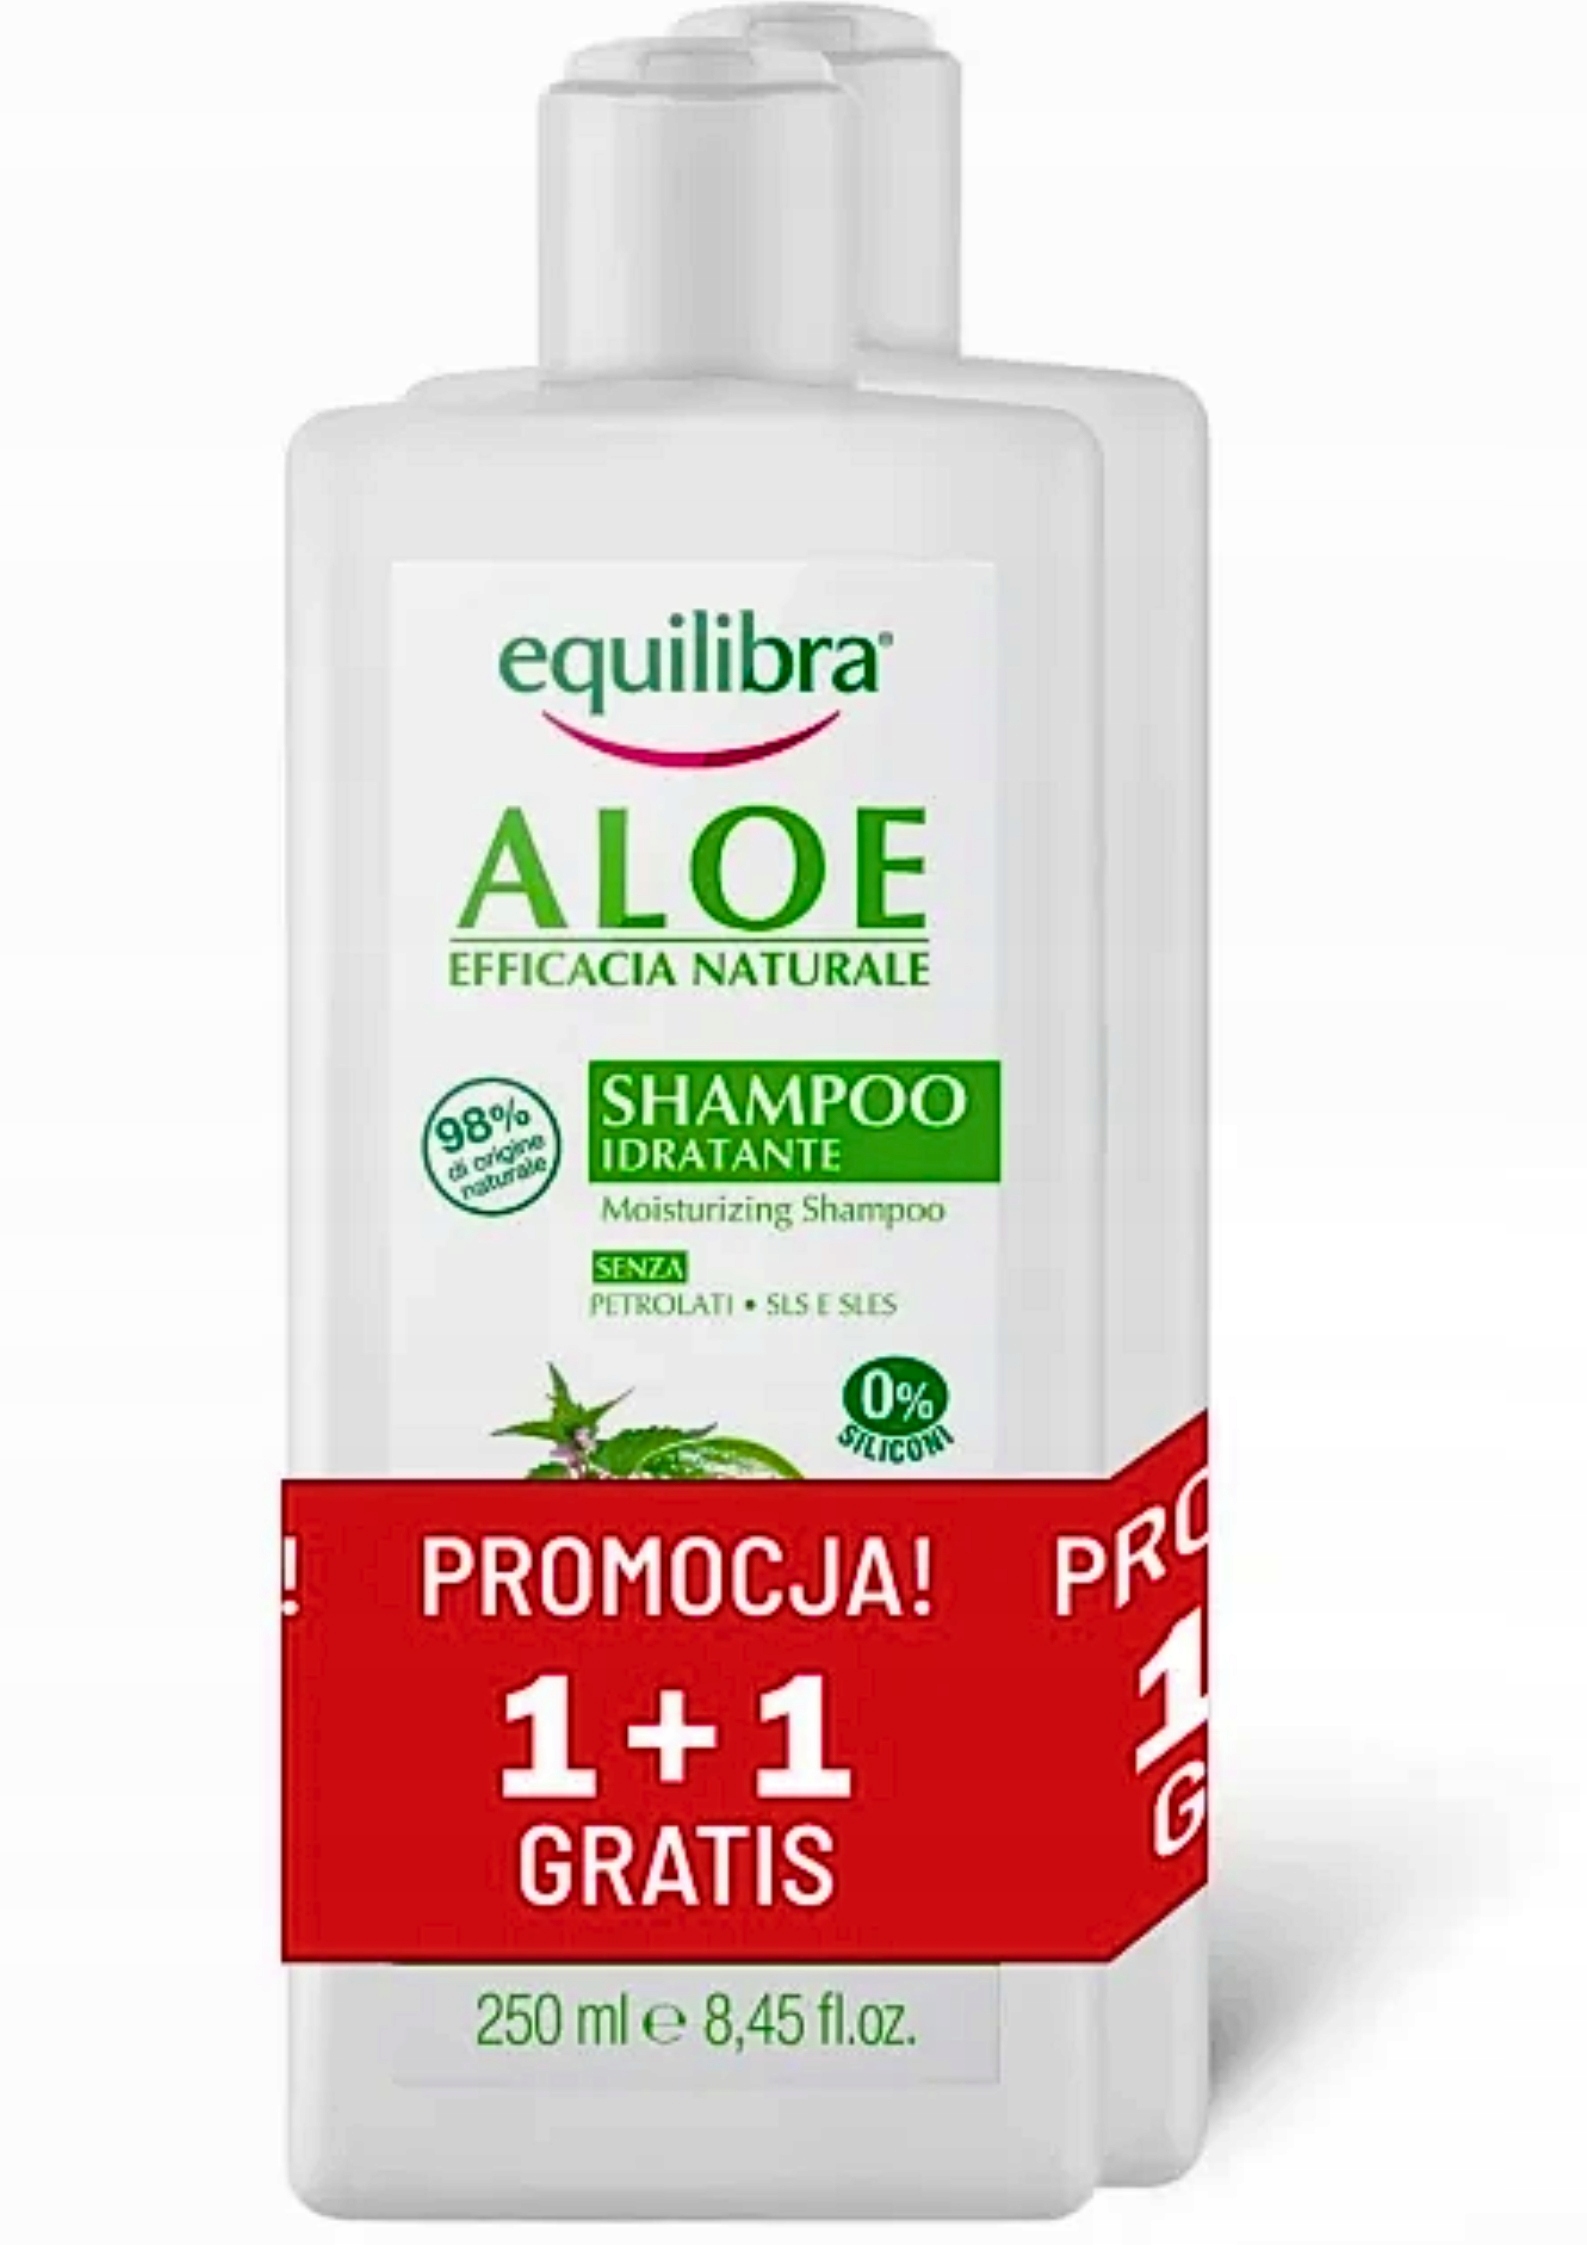 equilibra aloesowy szampon do włosów restrukturyzujący